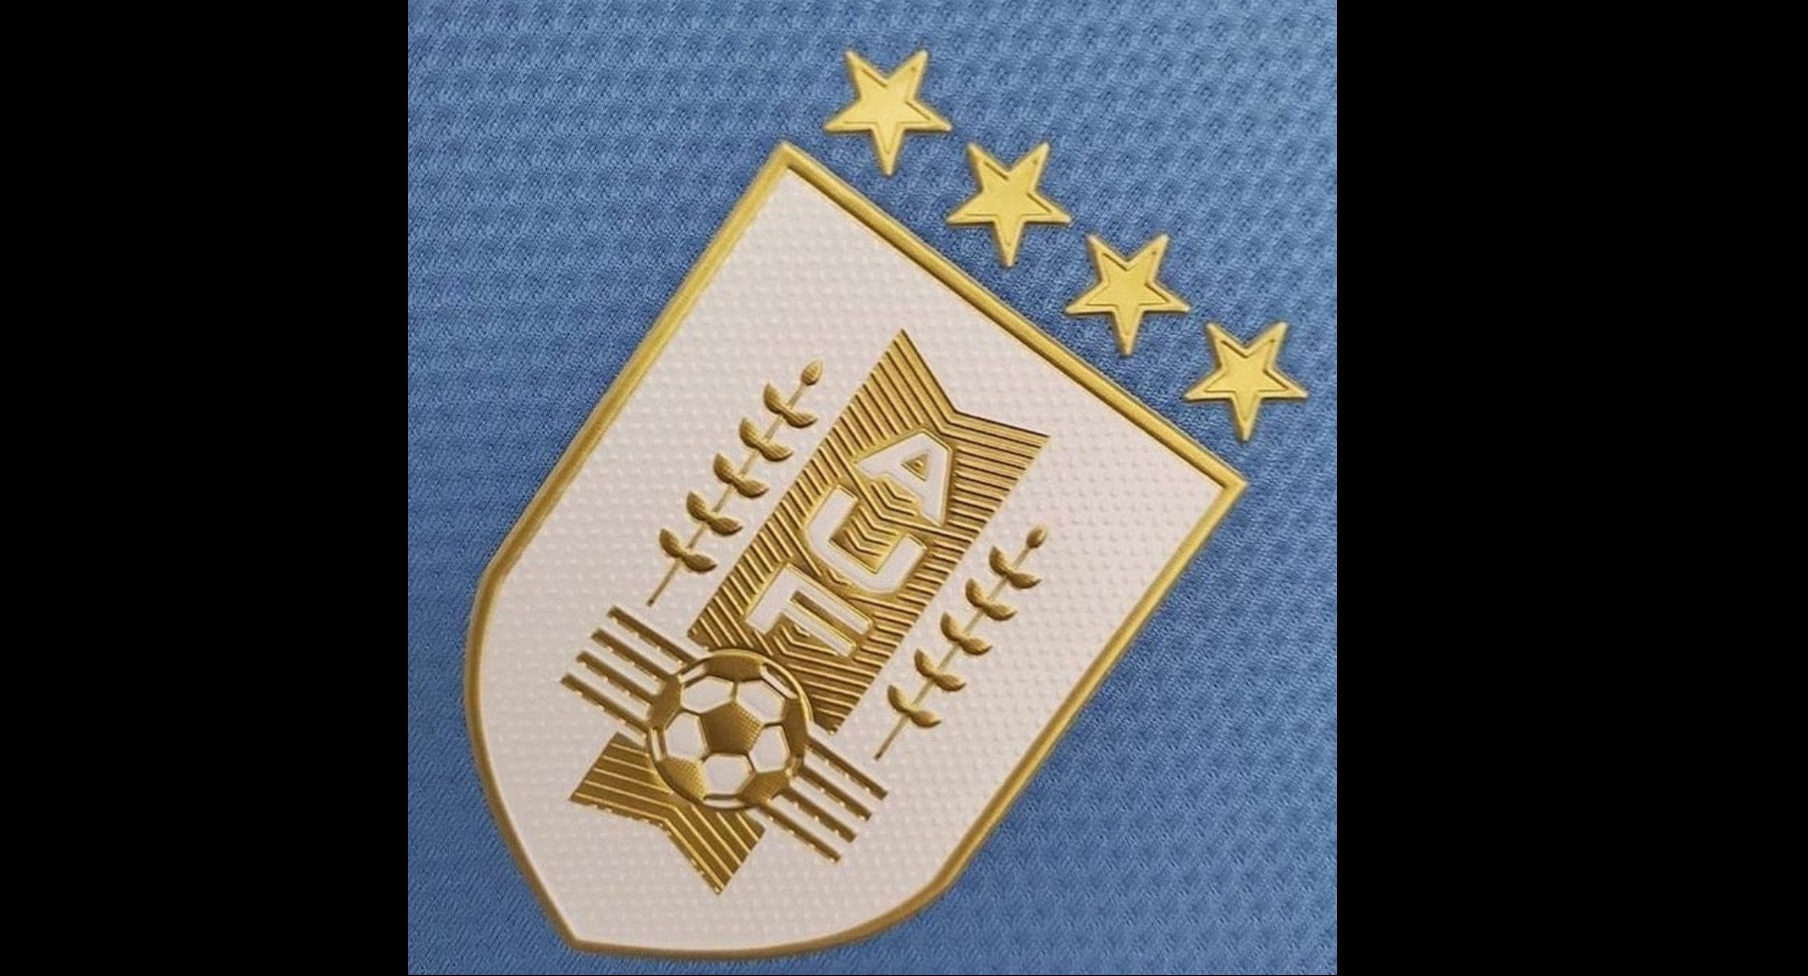 Tabla anual del - AUF - Selección Uruguaya de Fútbol